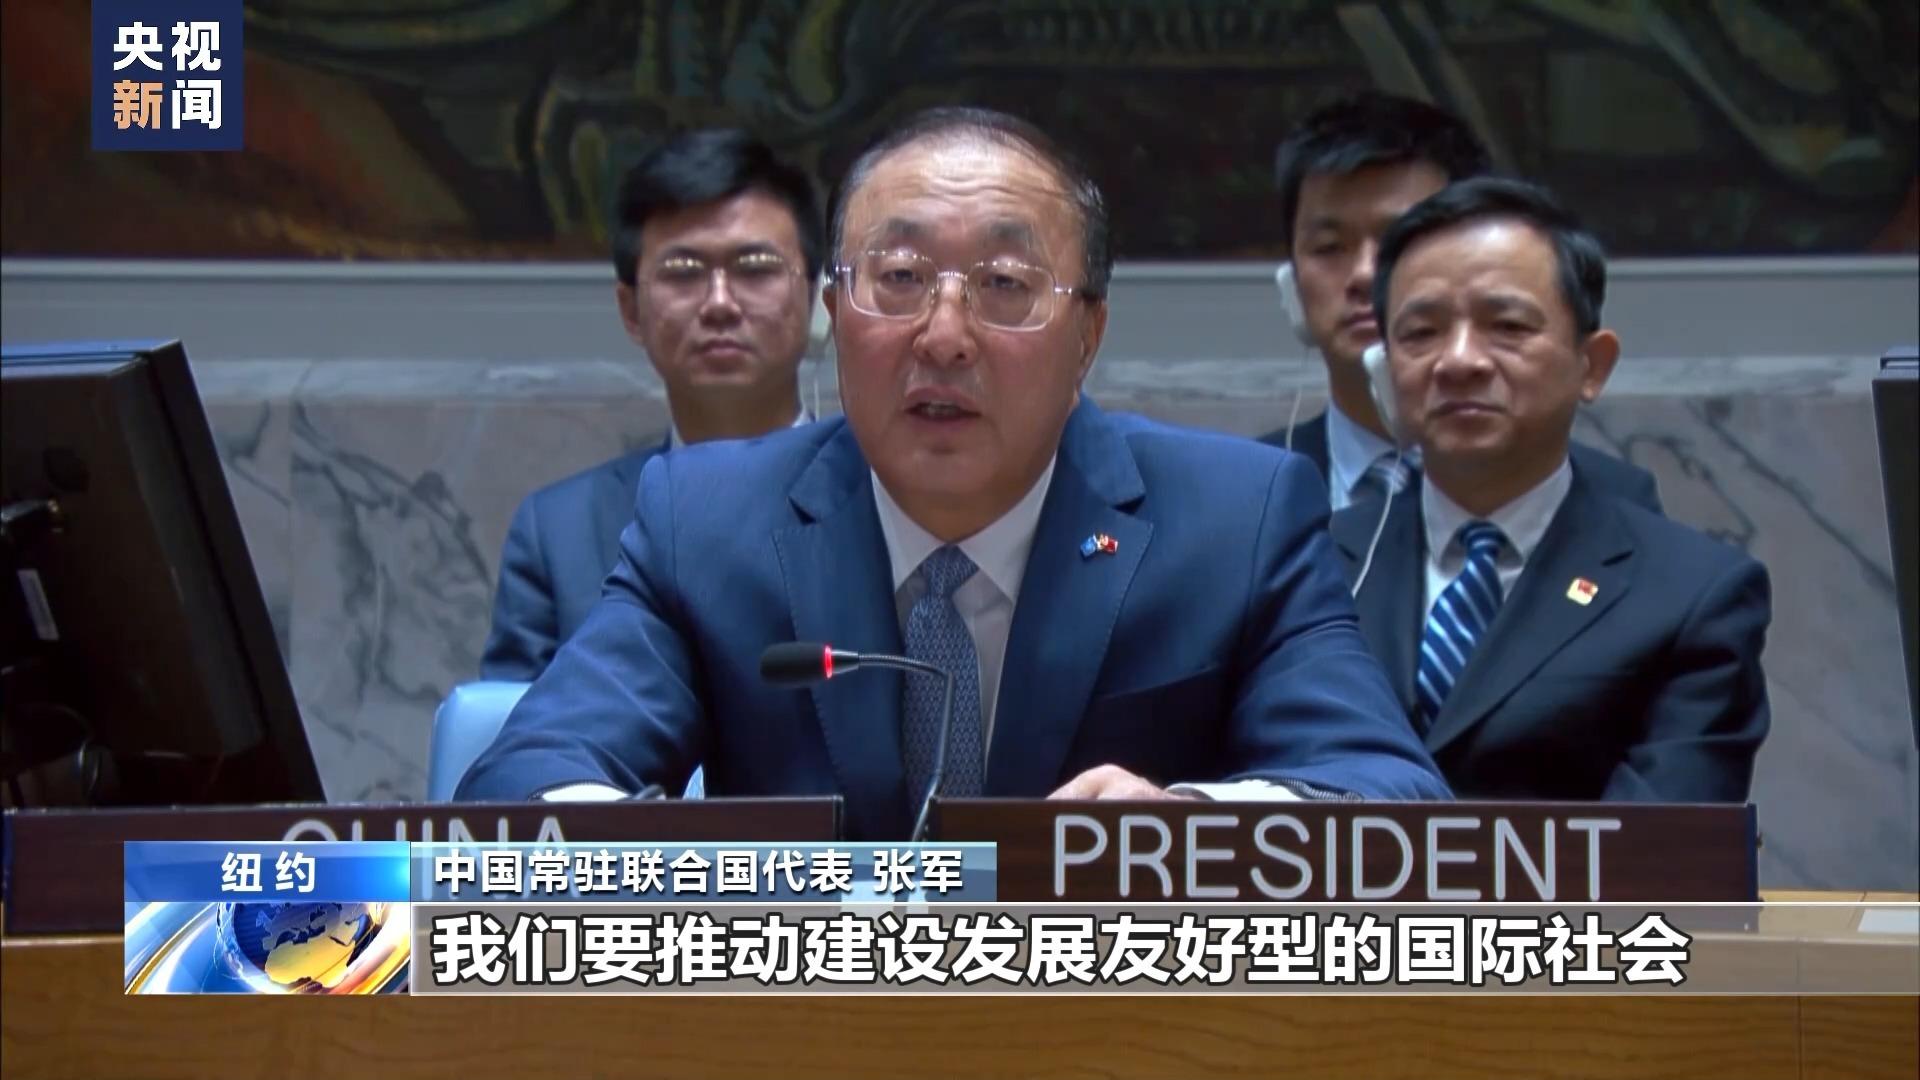 संयुक्त राष्ट्र संघअन्तर्गत सुरक्षा परिषद्मा चीनद्वारा दिगो शान्तिलाई अघि बढाउने खुला बहसको अध्यक्षता